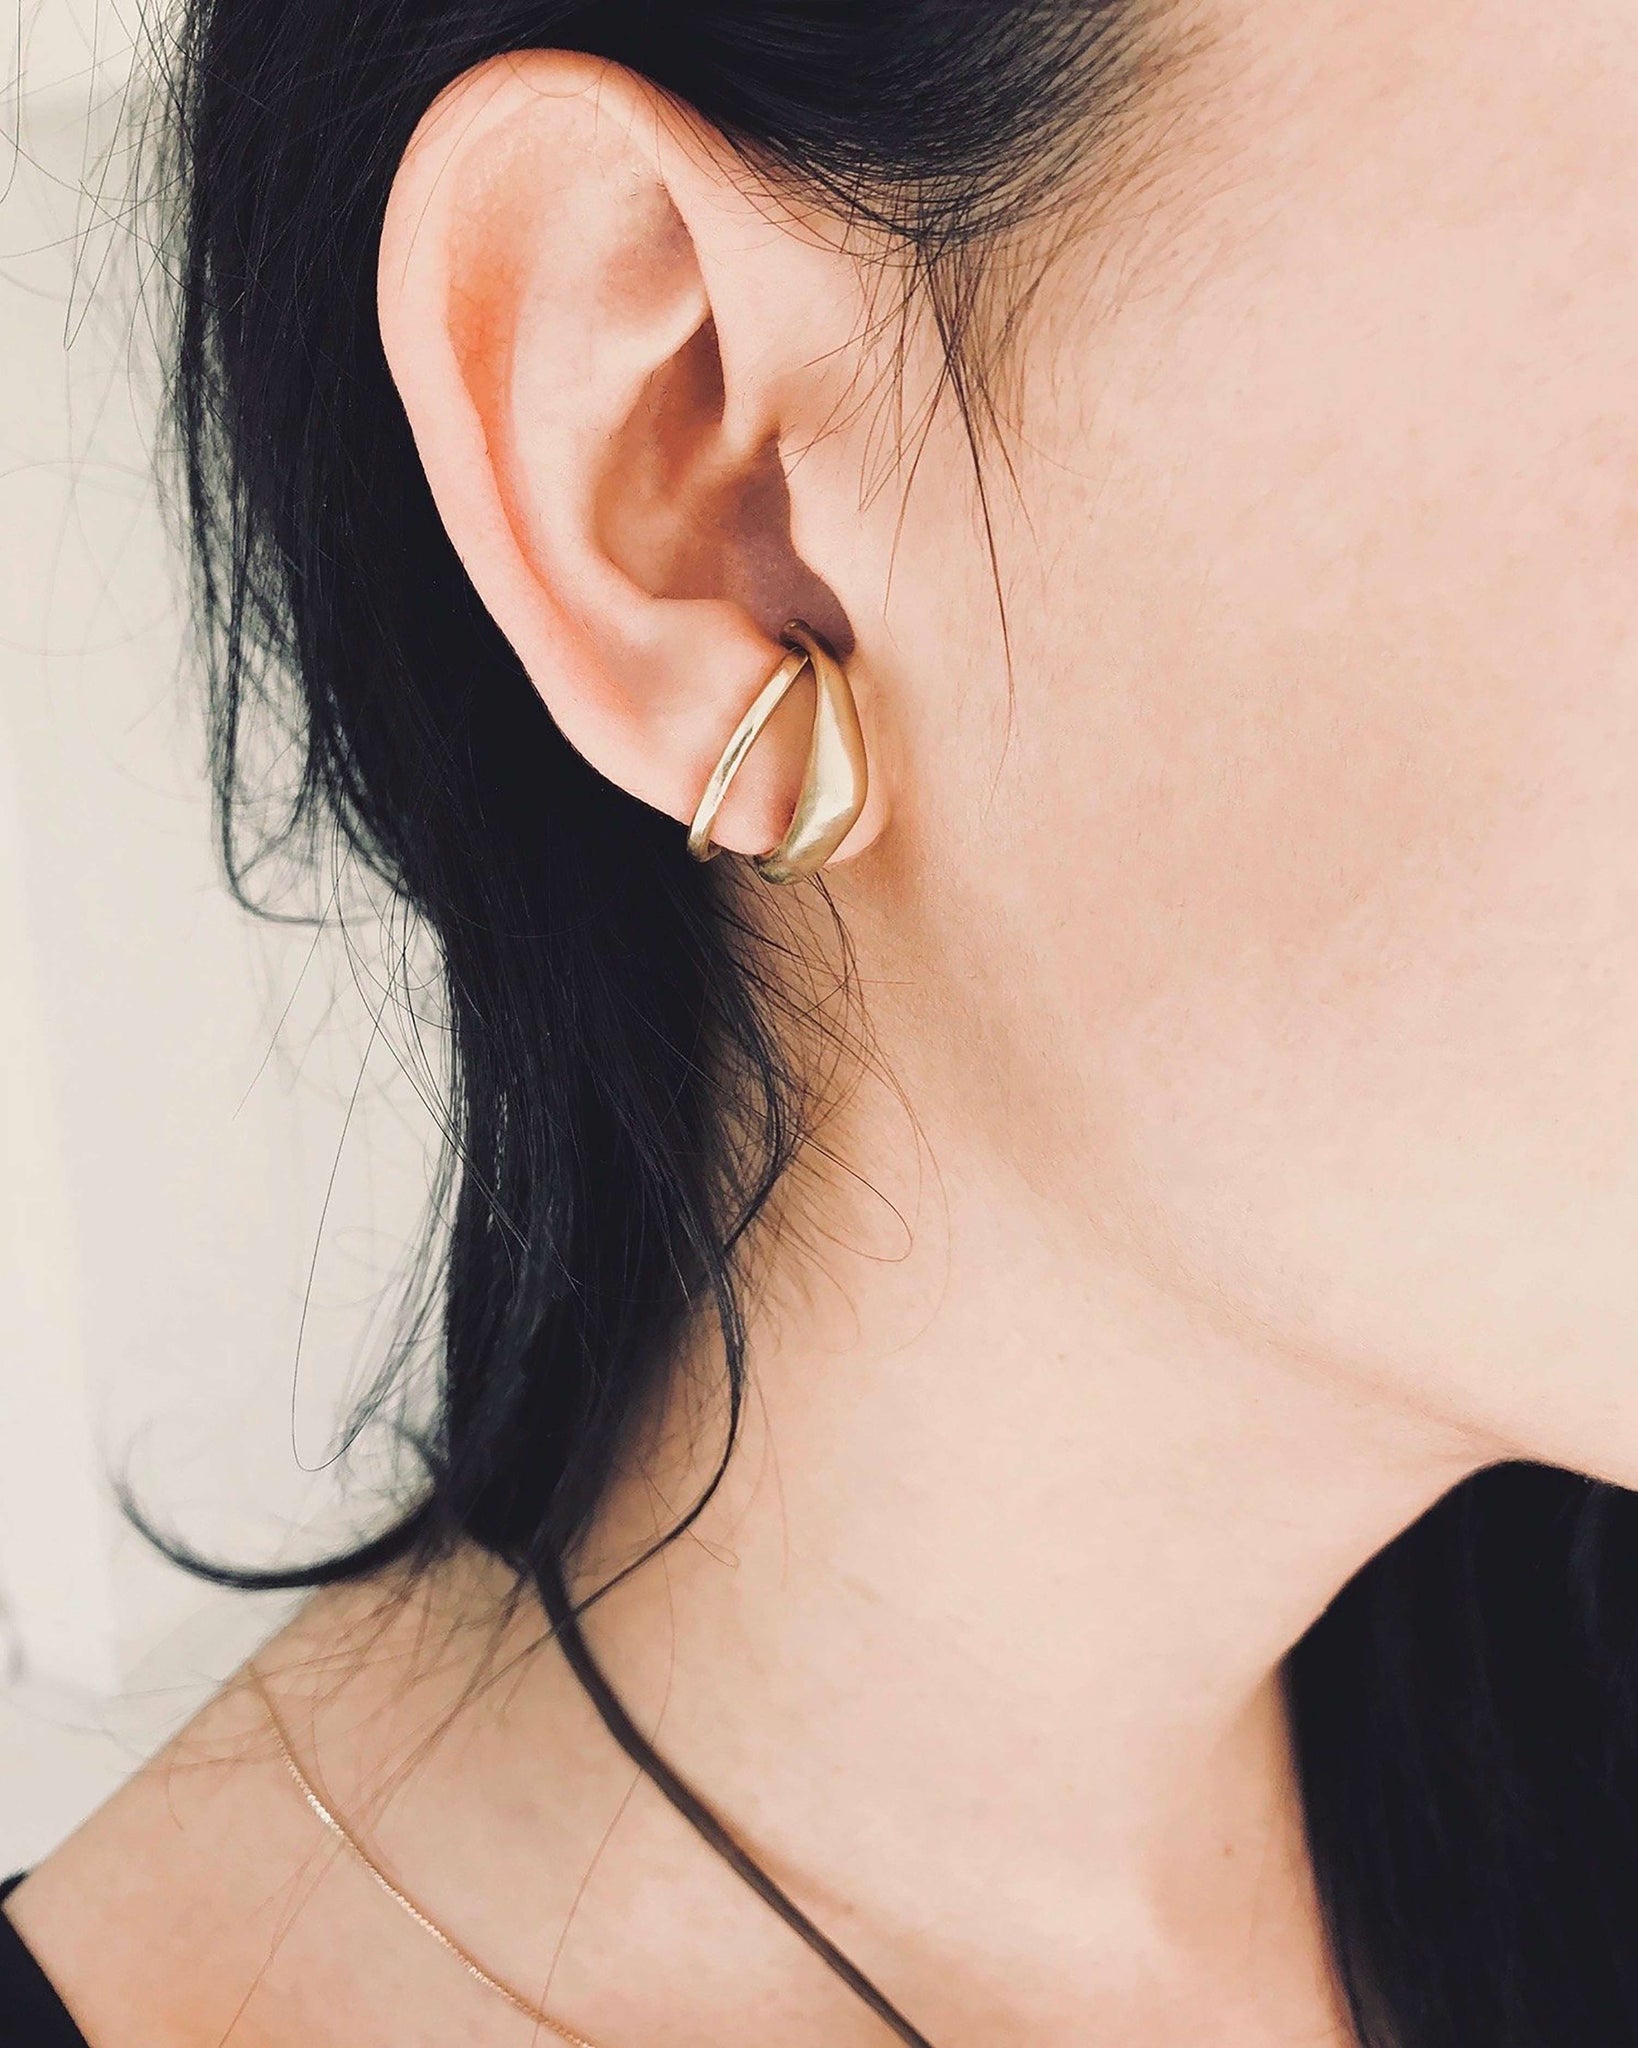 EAR BAND POST EARRINGS – Kendall Conrad